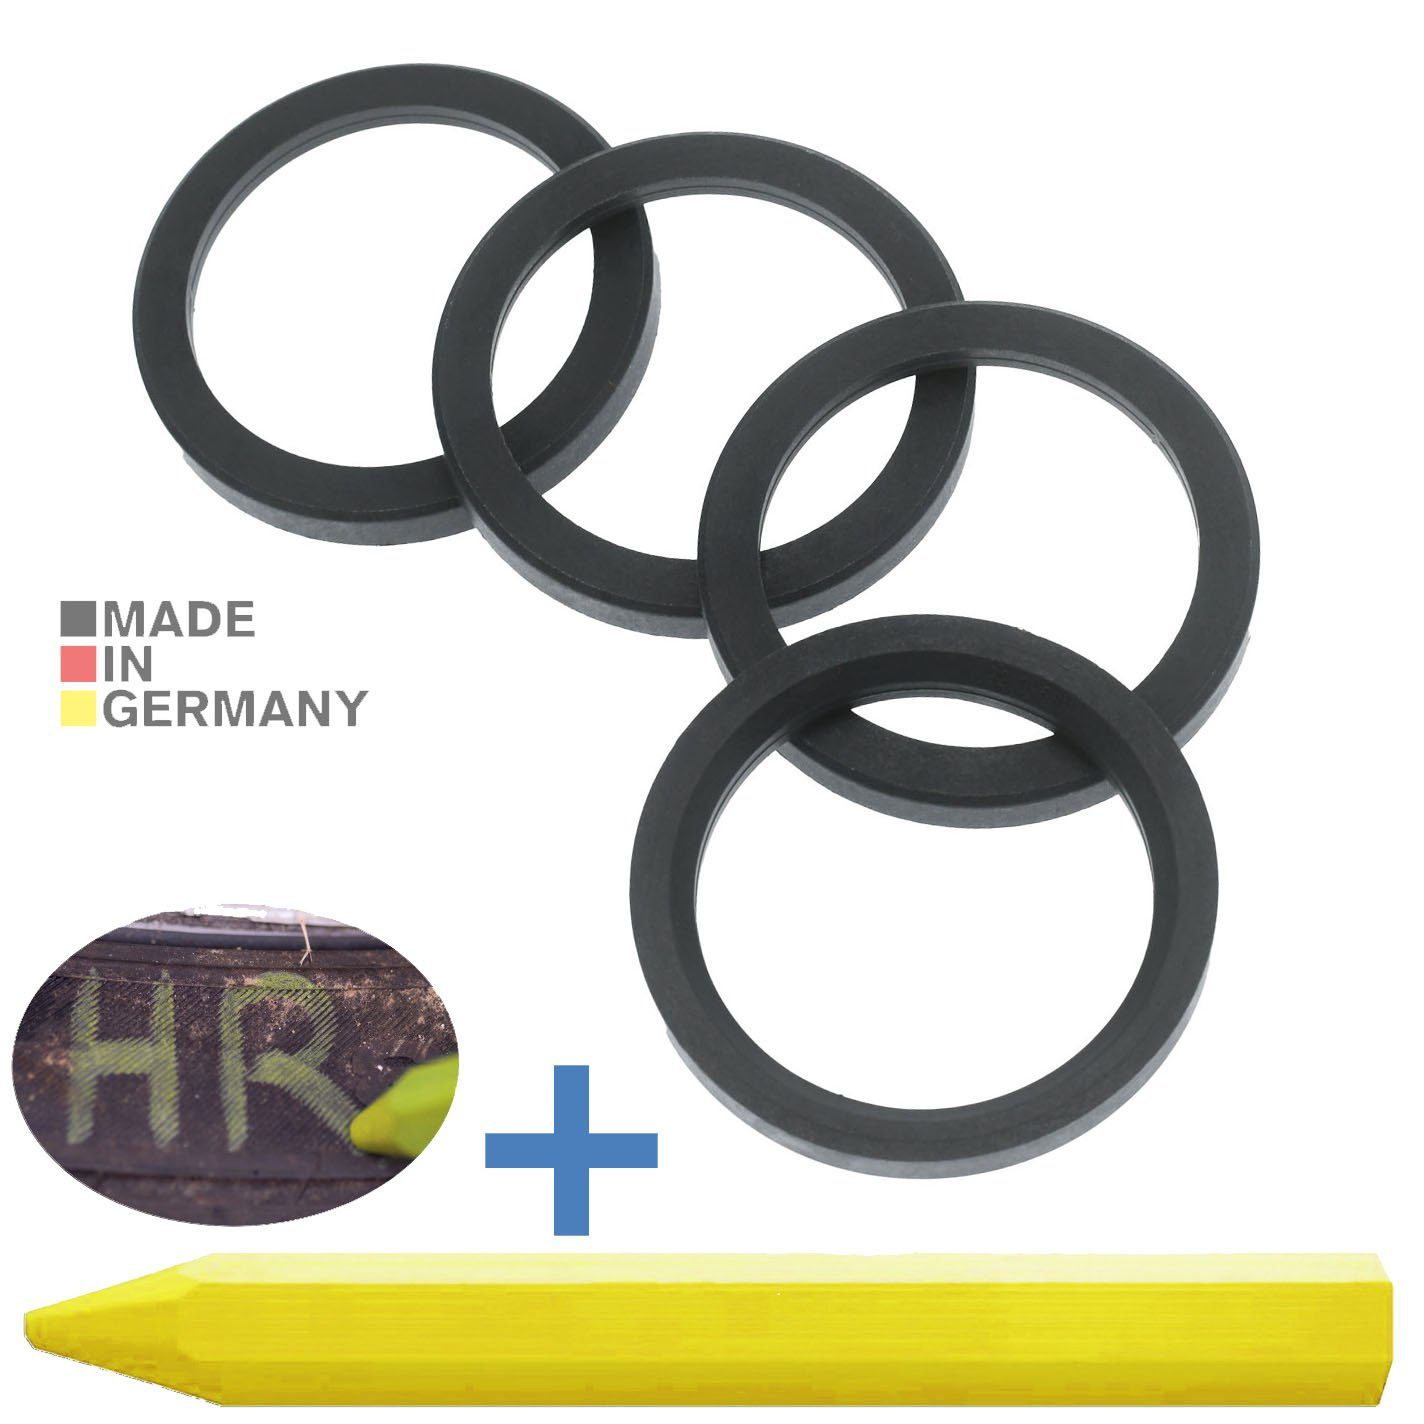 RKC Reifenstift 4X Zentrierringe Dunkelgrau Felgen Ringe + 1x Reifen Kreide Fett Stift, Maße: 72,0 x 56,1 mm